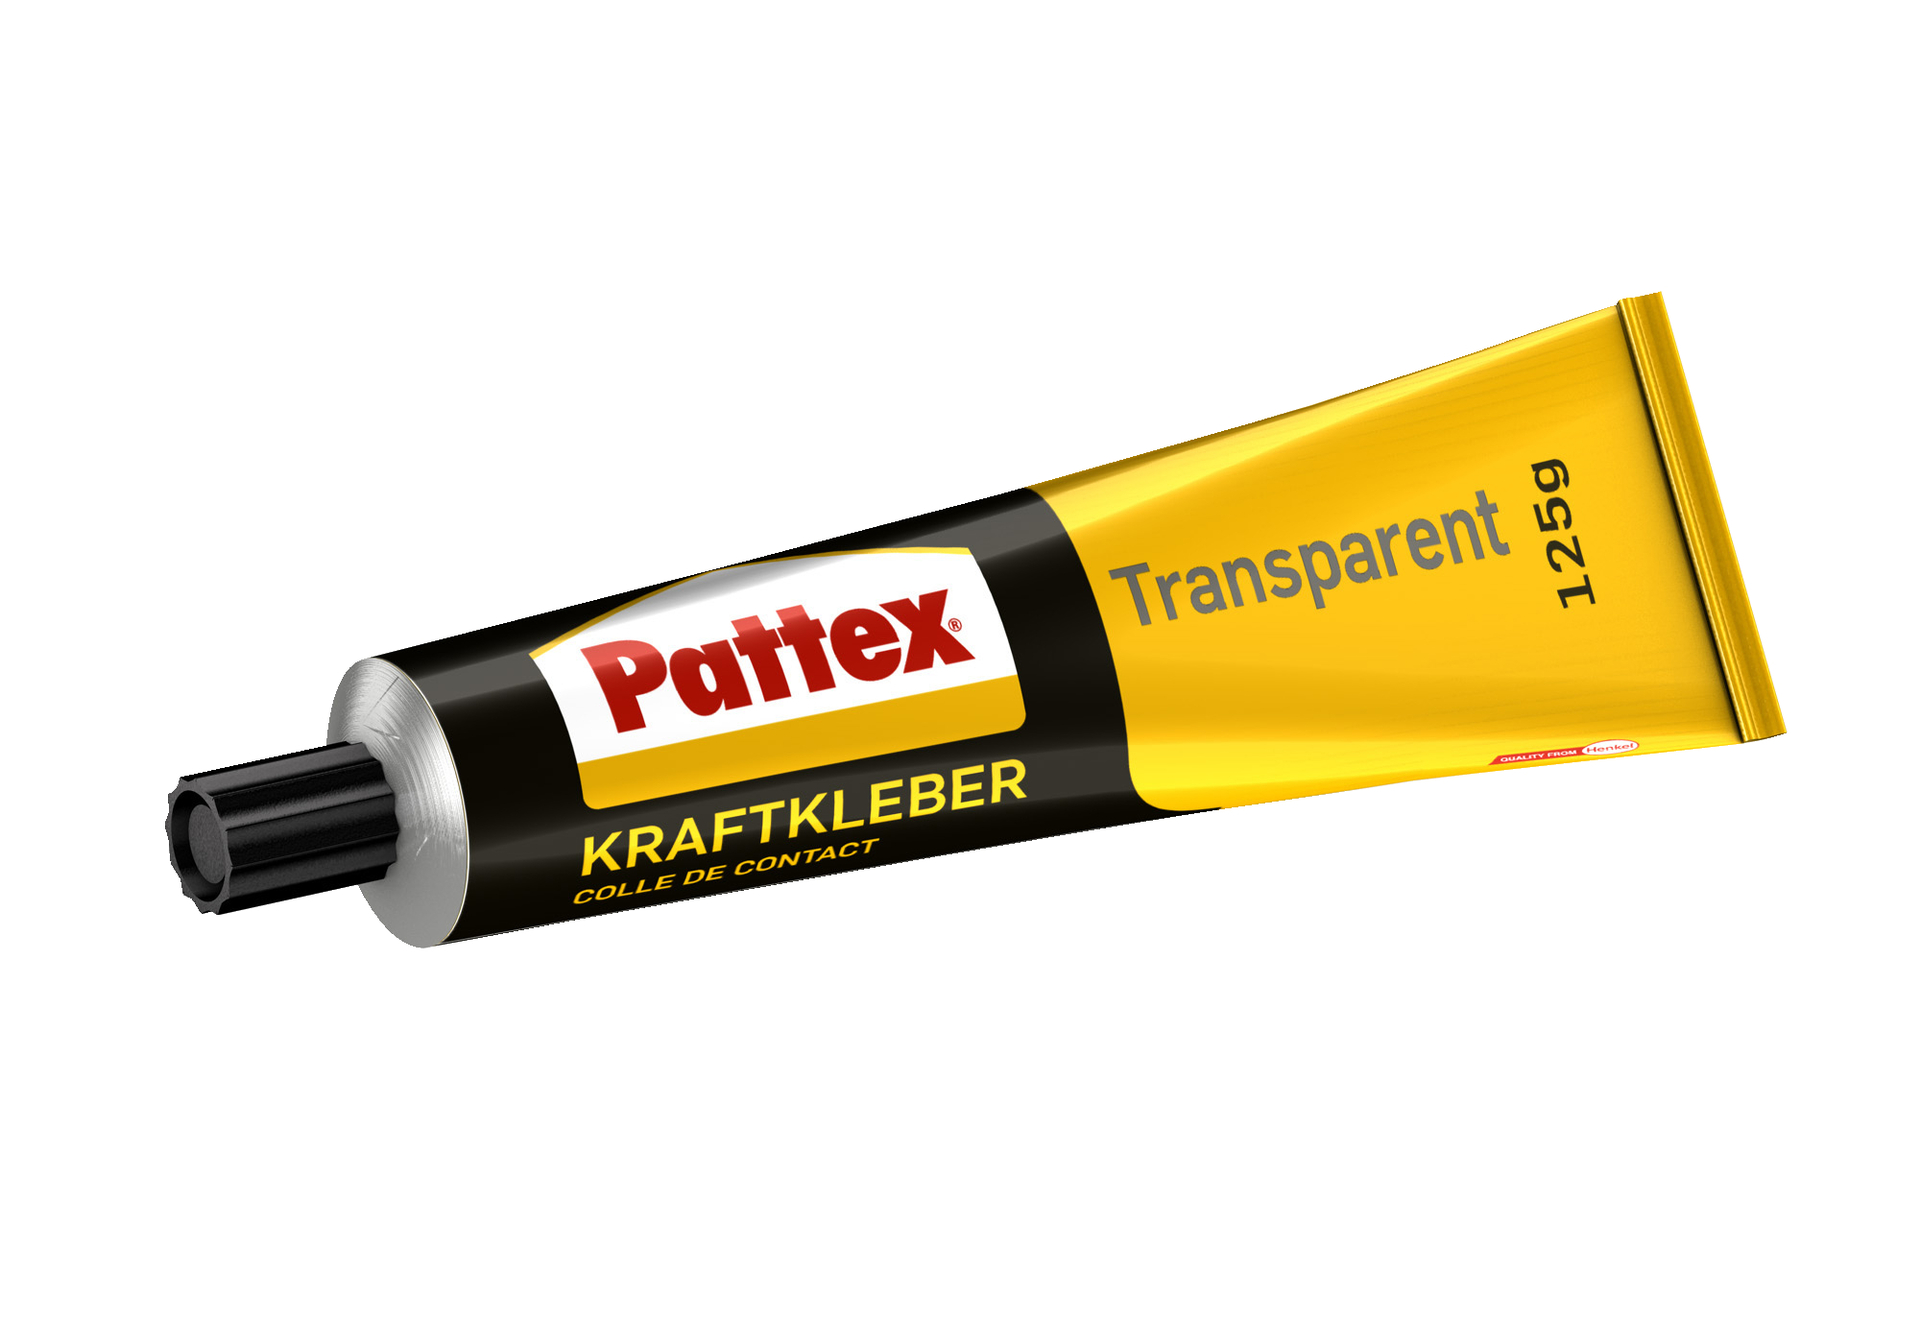 Pattex transparent